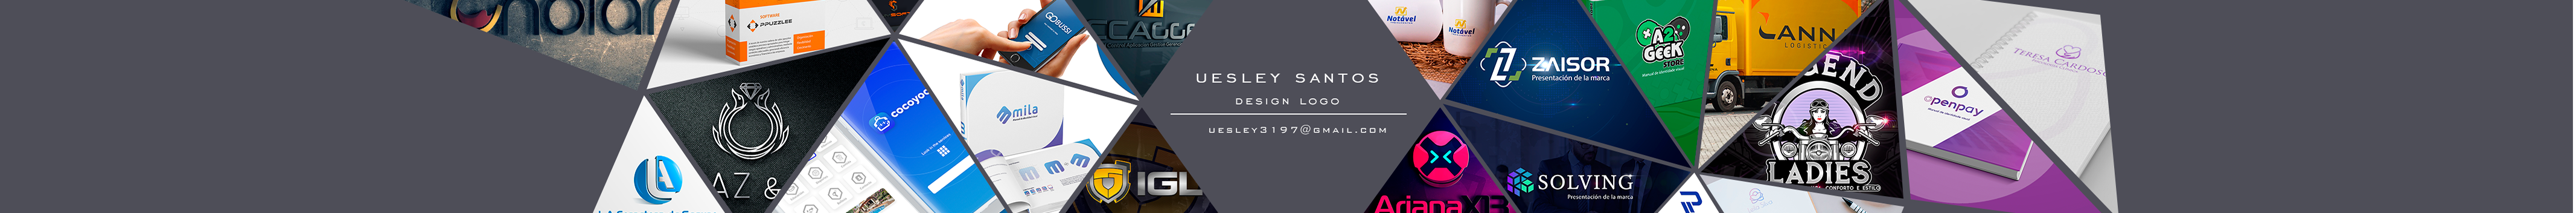 Uesley Melo dos Santos 的個人檔案橫幅